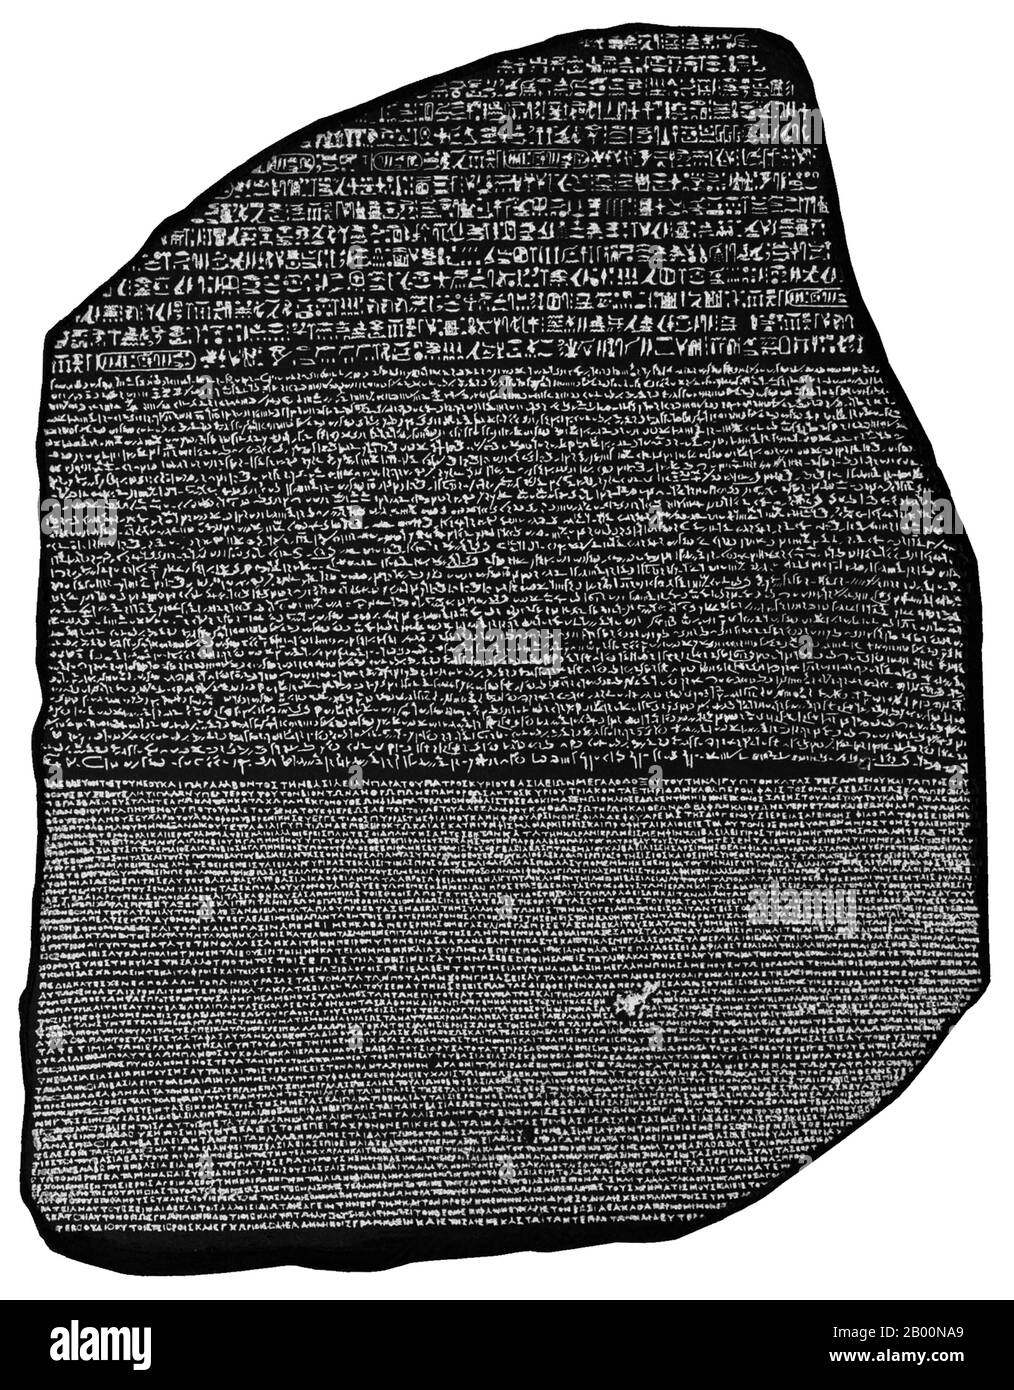 Egitto: La pietra Rosetta è un antico artefatto egiziano che ha fornito la chiave per la comprensione moderna dei geroglifici egiziani. Creato per volere di Re Tolomeo V Epifani (204-180 a.C.). La pietra Rosetta è un frammento di una stele di granodiorite più grande, con un'iscrizione che registra un decreto che fu emesso a Memphis nel 196 a.C. Non sono stati trovati frammenti aggiuntivi nelle ricerche successive del sito di Rosetta. A causa del suo stato danneggiato, nessuno dei tre testi è assolutamente completo. Il testo greco contiene 54 righe, delle quali le prime 27 sopravvivono integralmente; le altre sono sempre più frammentarie. Foto Stock